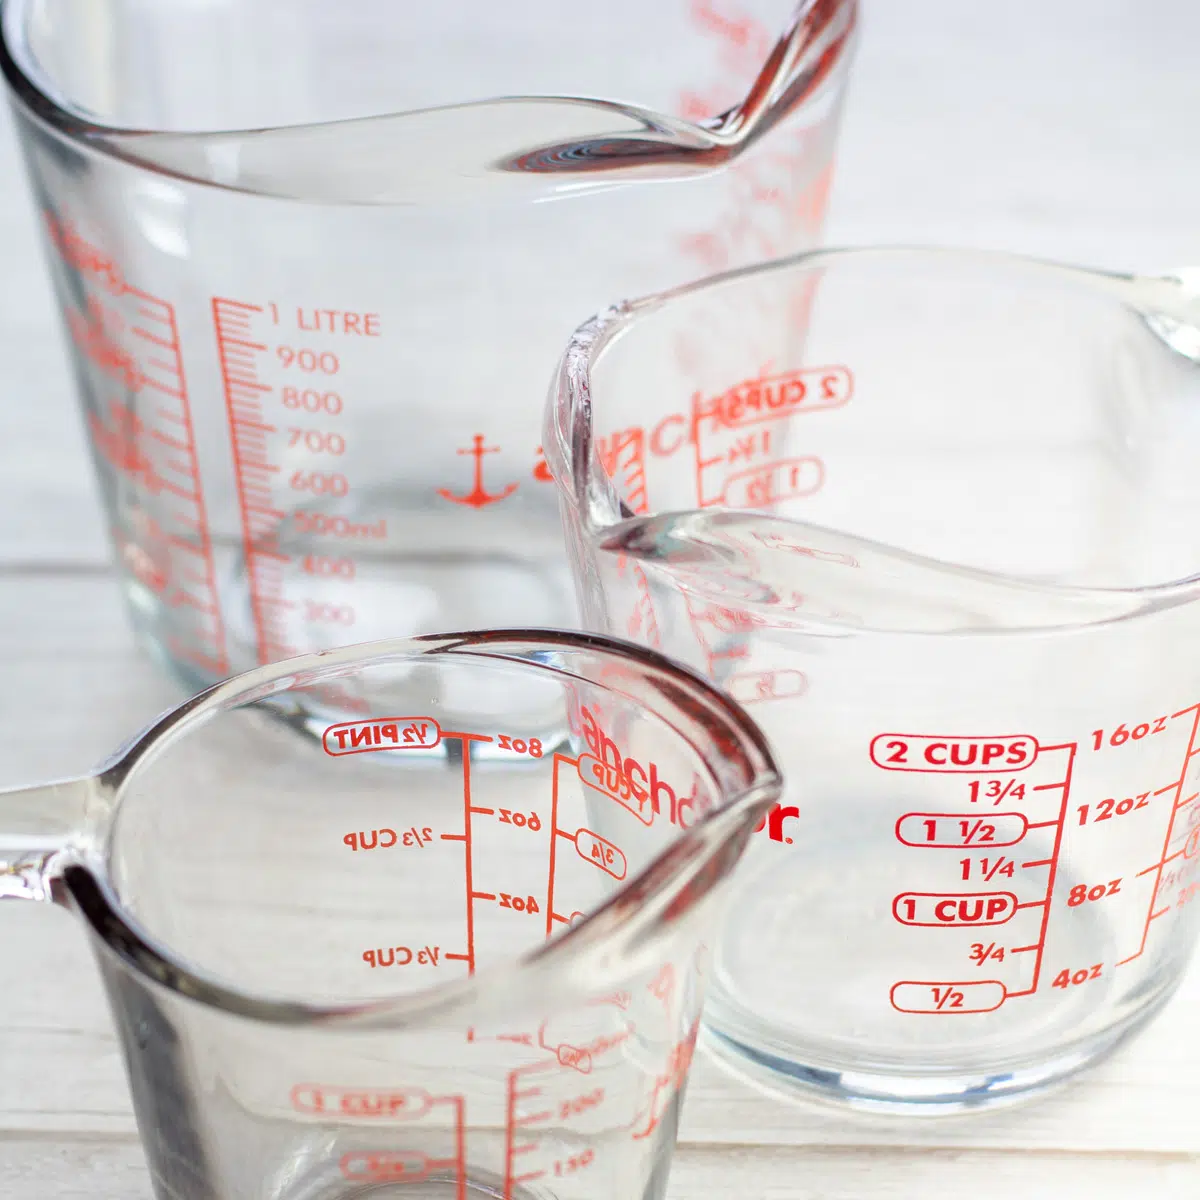 Misurini multipli assortiti per quante tazze in una guida di galloni.